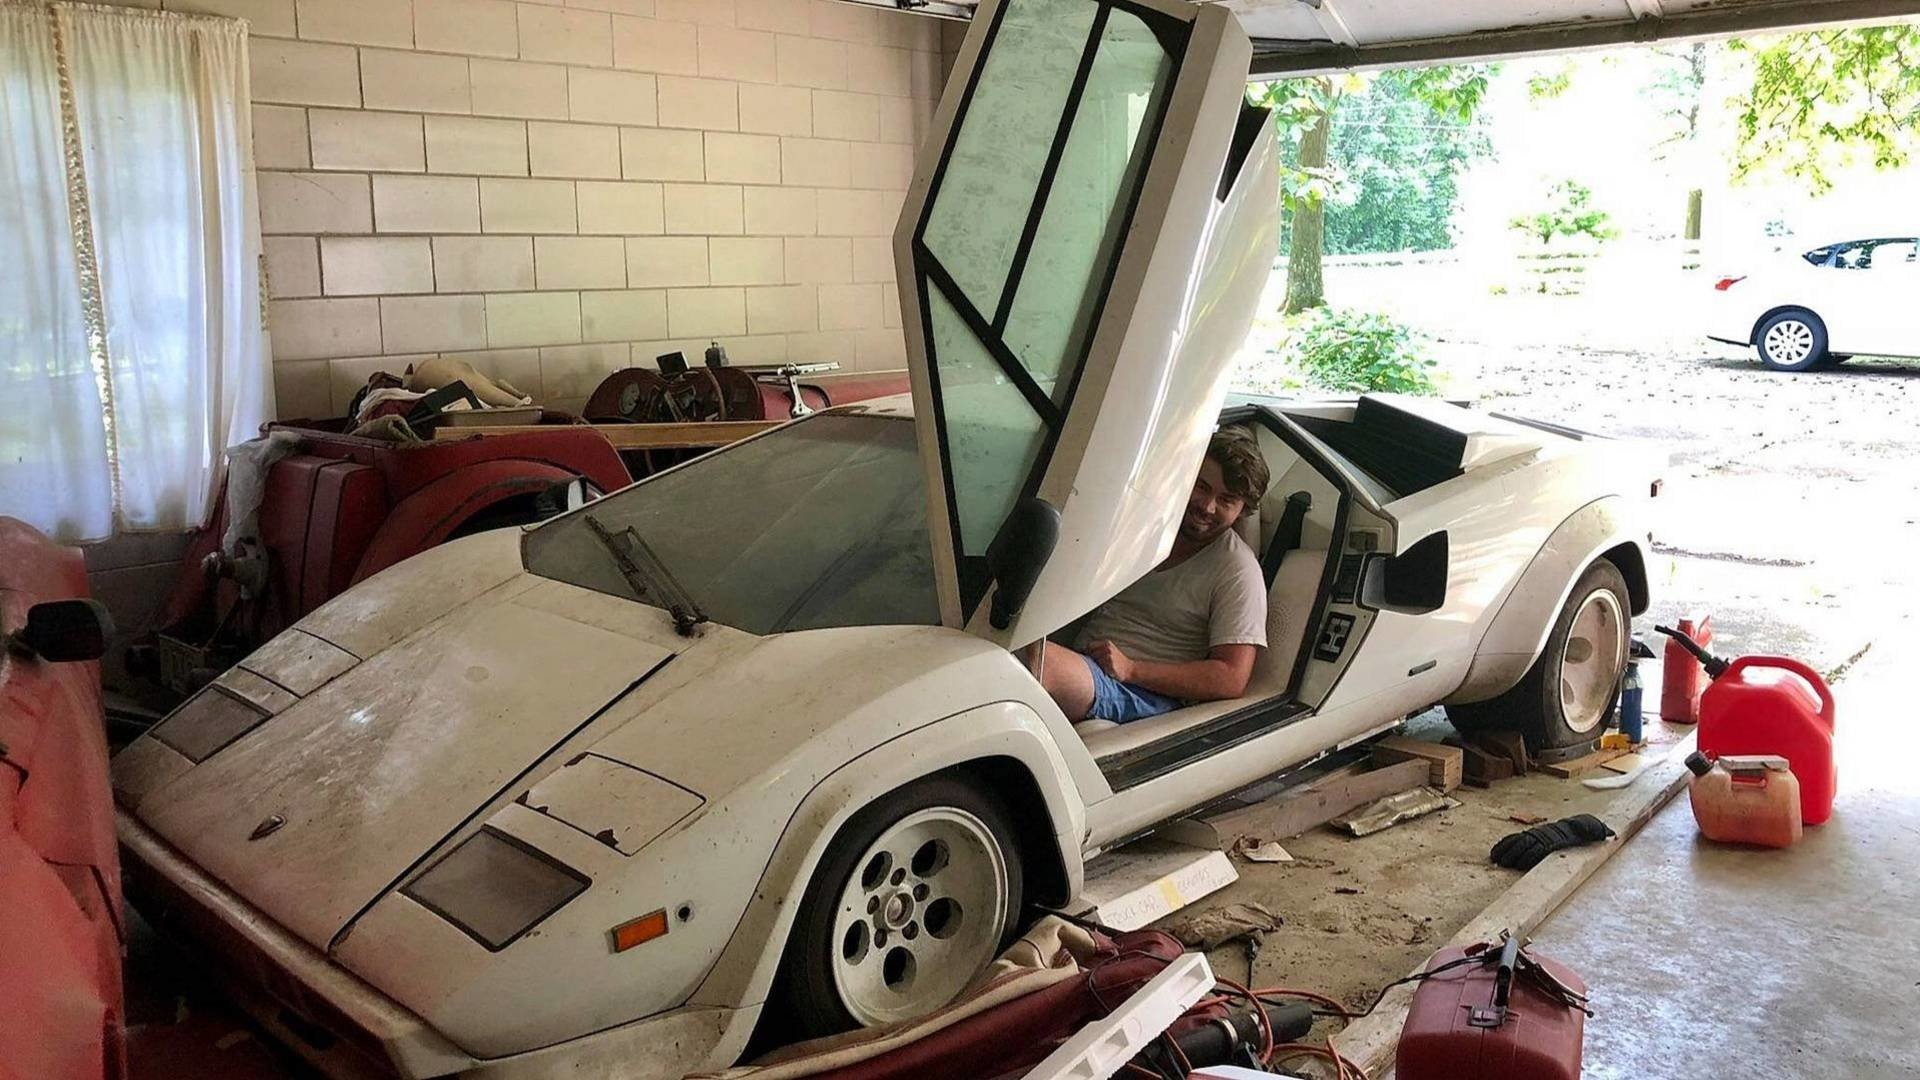 Vzácné Lamborghini Countach stojí přes 20 let ukryto v garáži spolu s dalšími skvosty